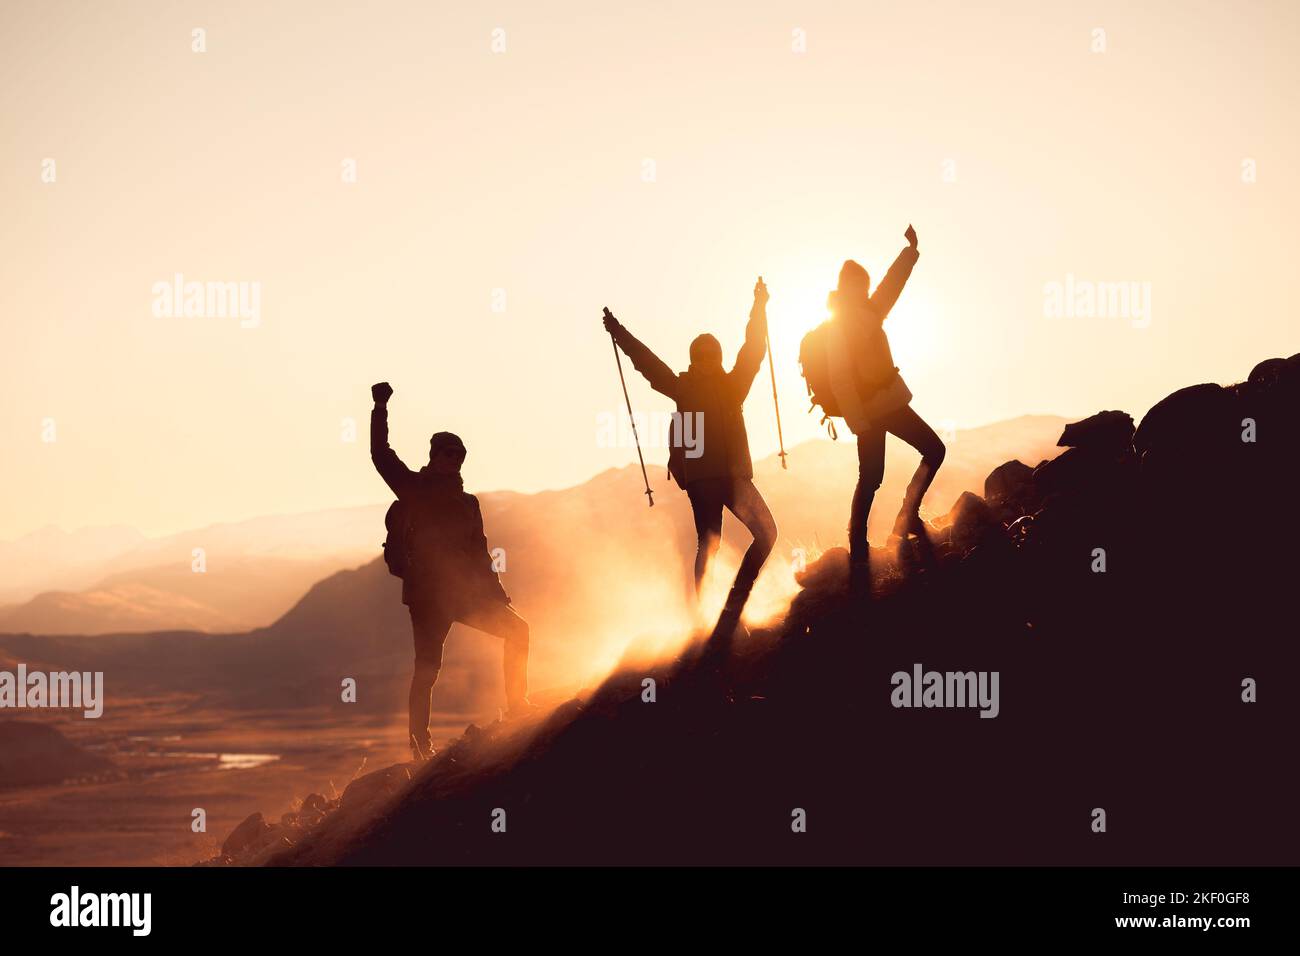 Silhouettes de trois randonneurs heureux debout avec des bras levés ar pente de montagne Banque D'Images